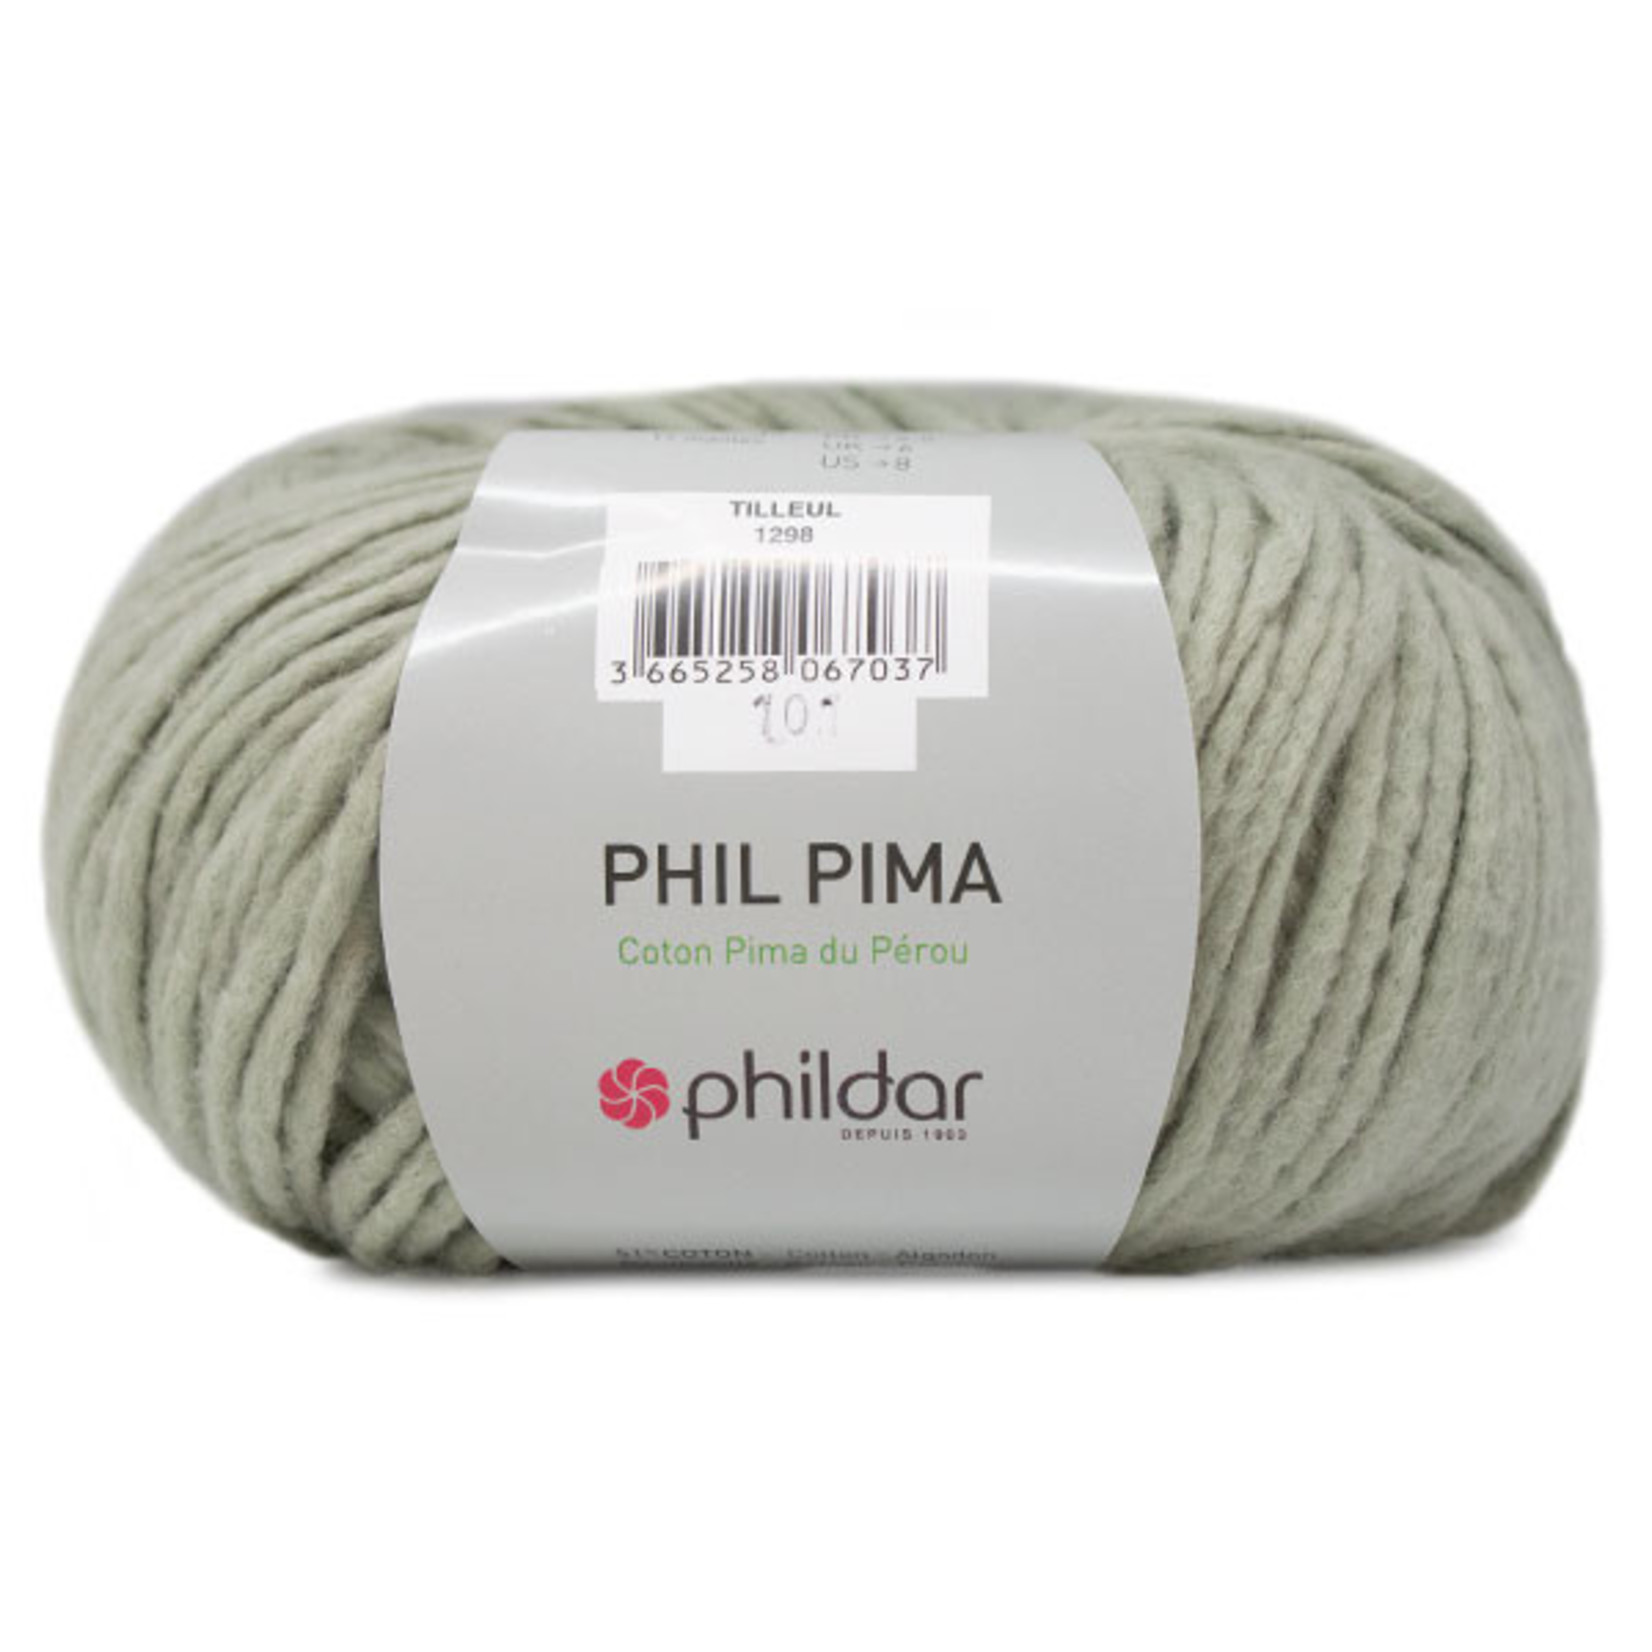 Phildar Phil Pima Tilleul